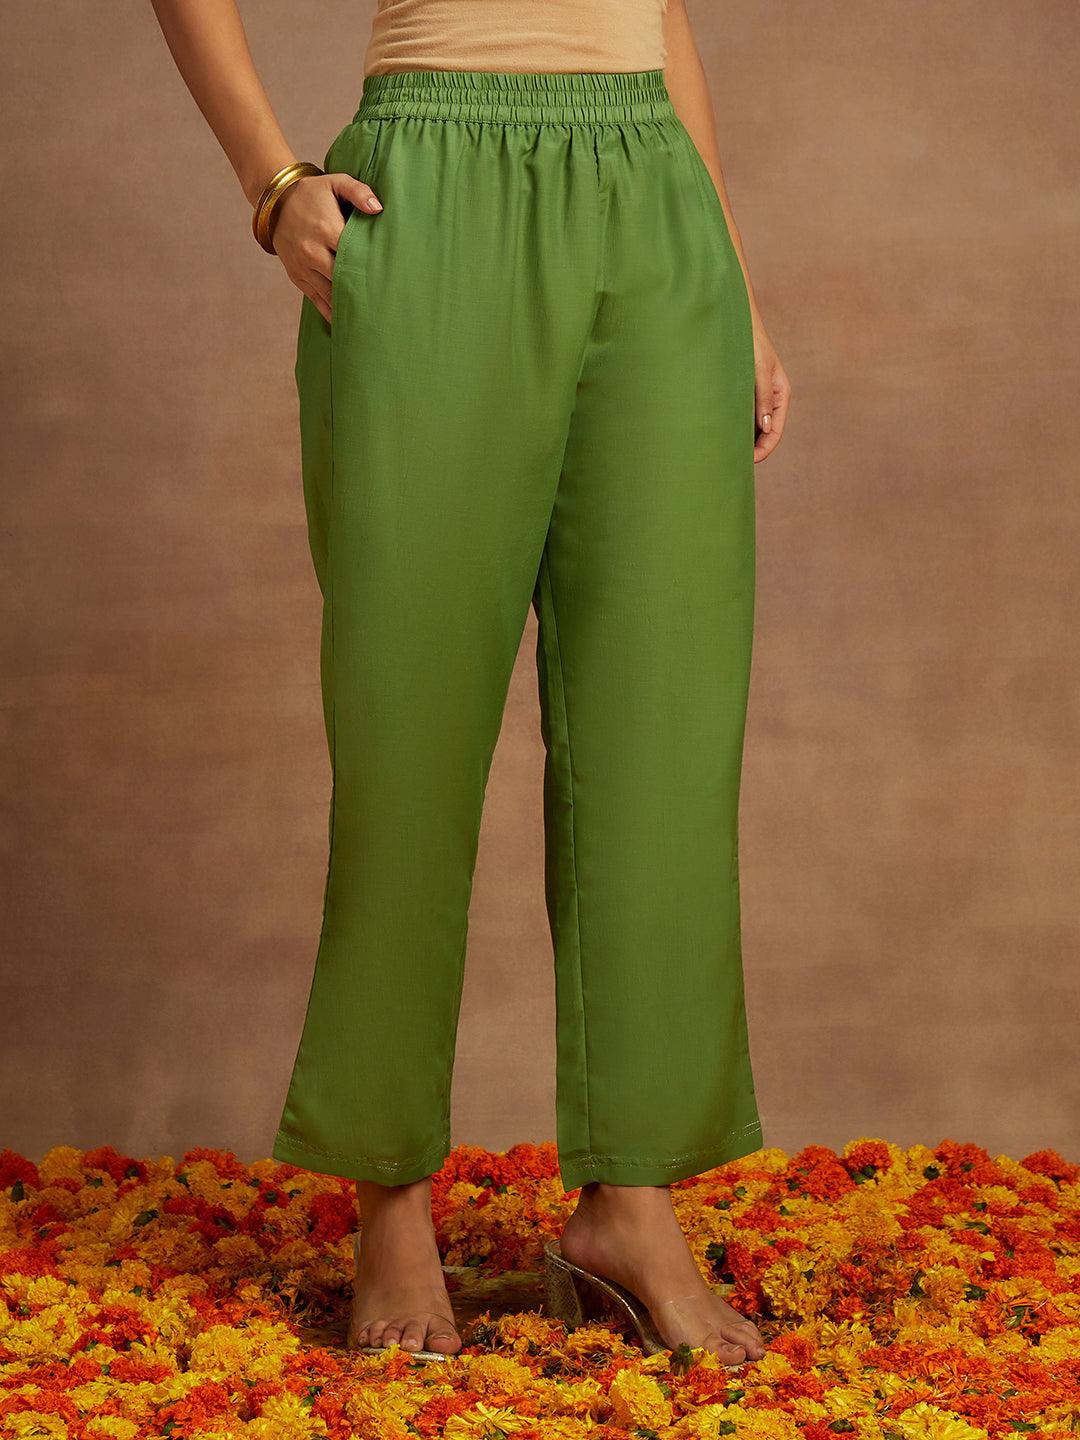 Green Woven Design Silk Blend Straight Kurta With Trousers & Dupatta - Libas